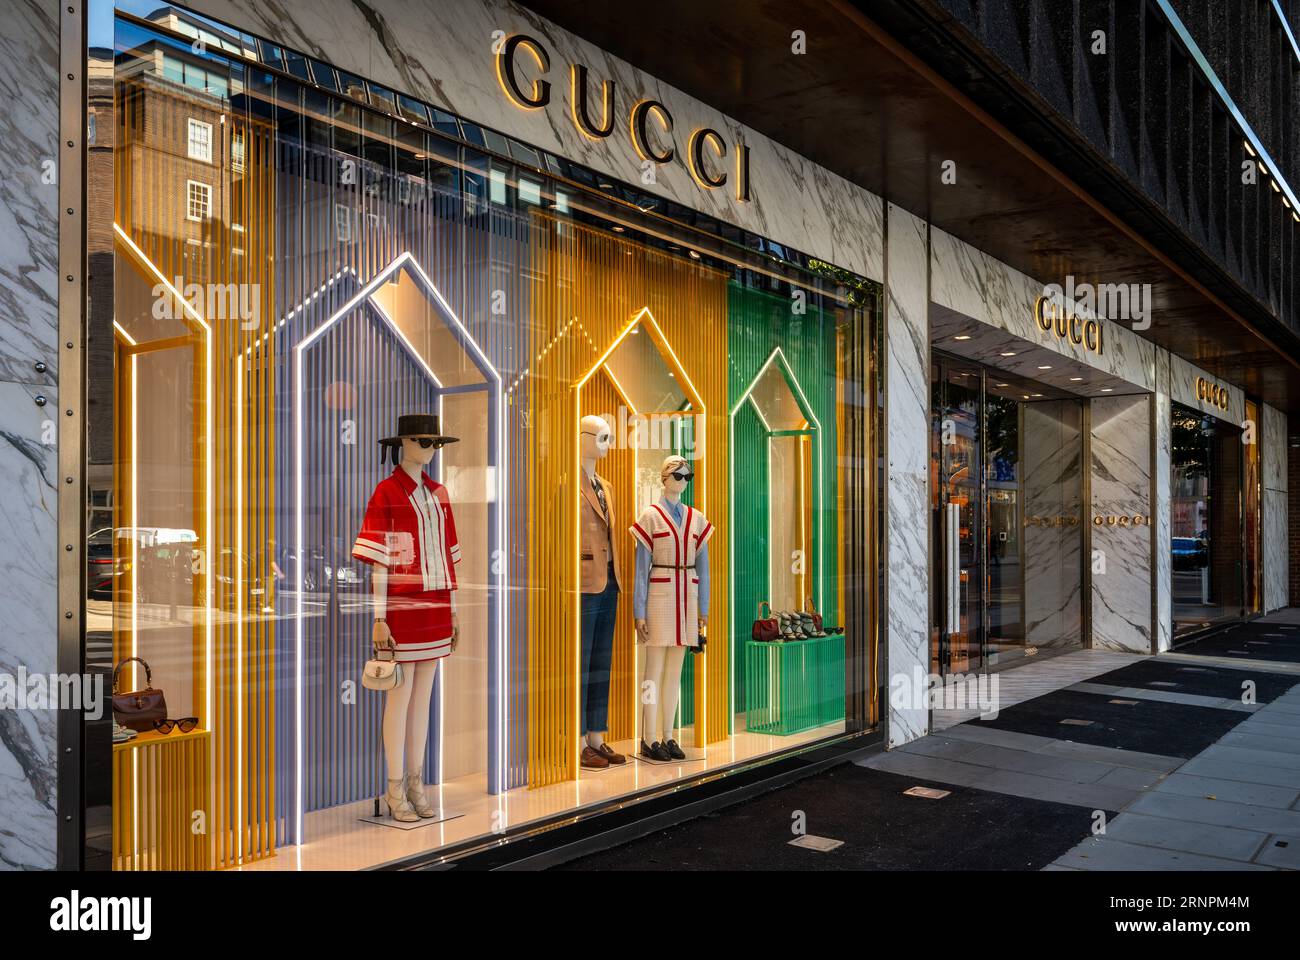 Londra, Regno Unito: Negozio Gucci su Sloane Street a Knightsbridge, Londra. Vetrina colorata con manichini che esprimono oggetti di lusso. Foto Stock